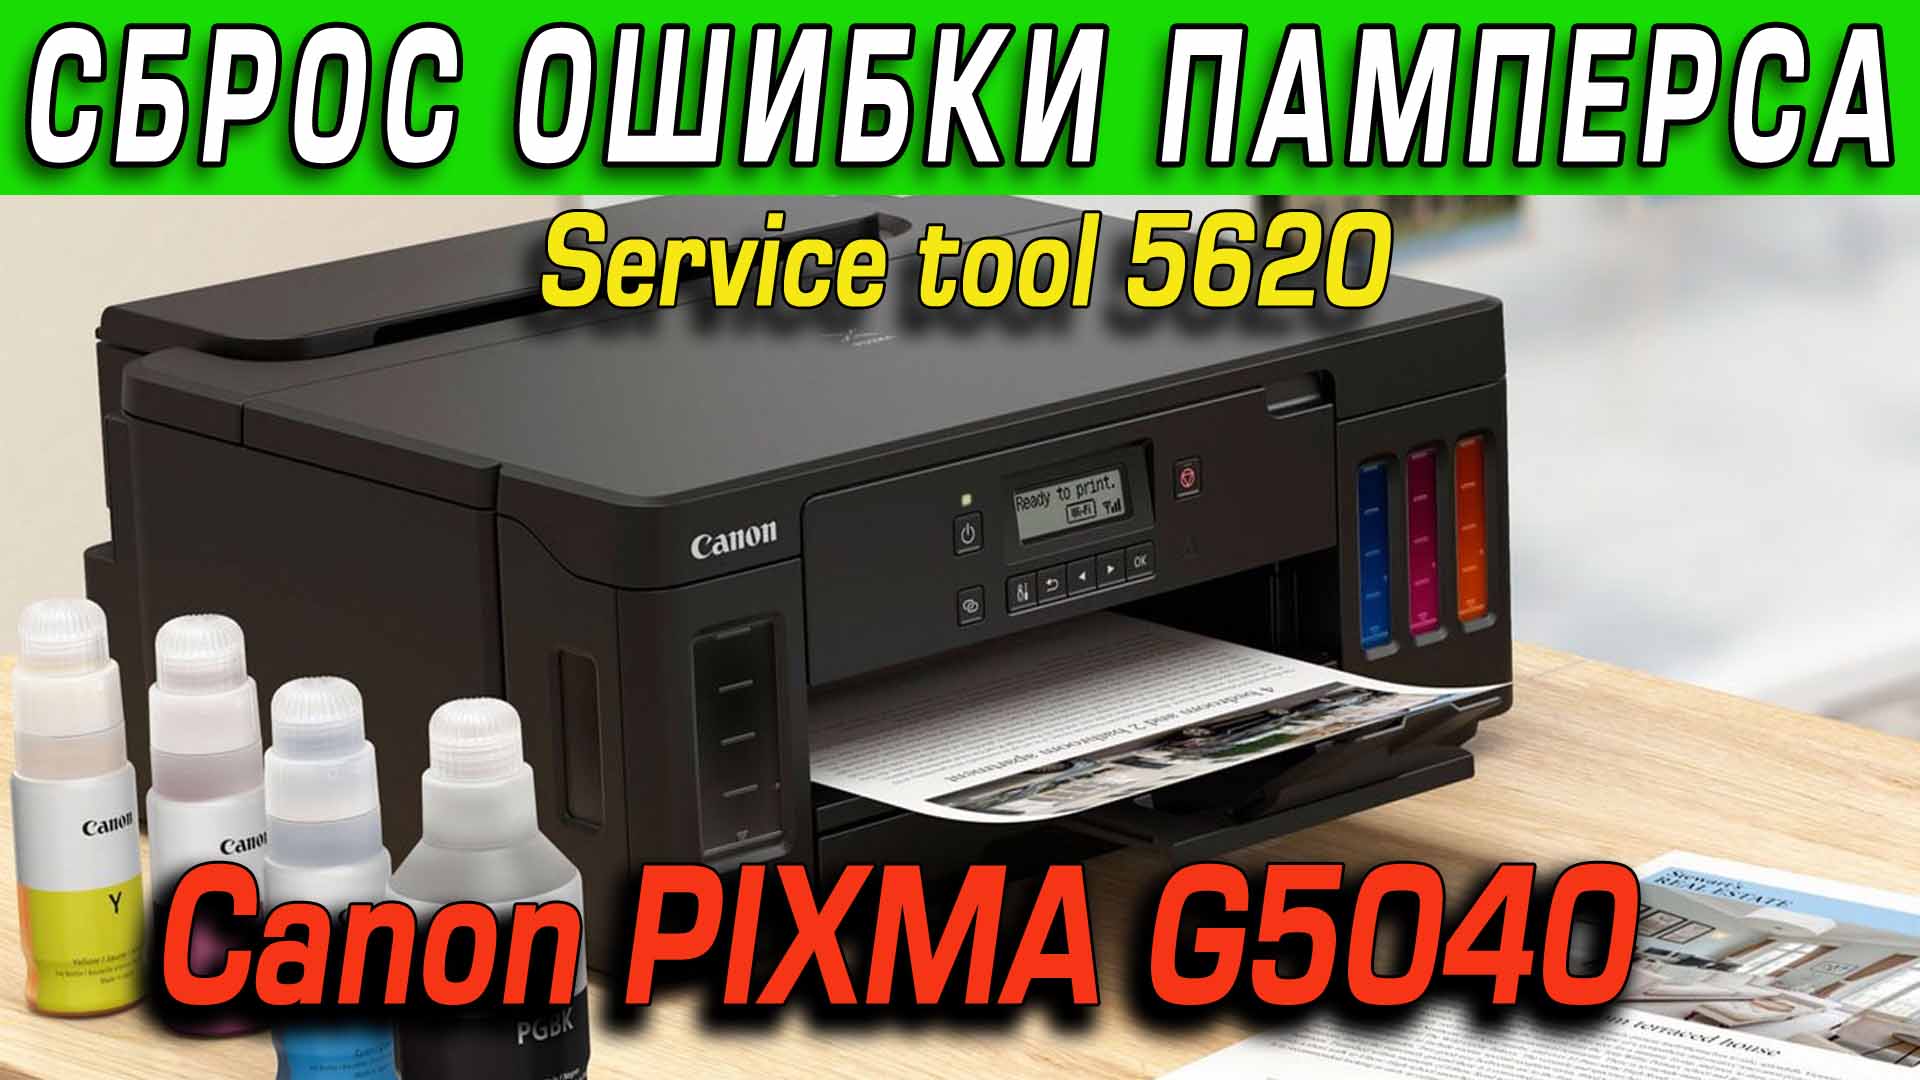 [Решено] Canon PIXMA G5040 (G5000) ошибки 5B00 или 1700. Как сбросить Видео